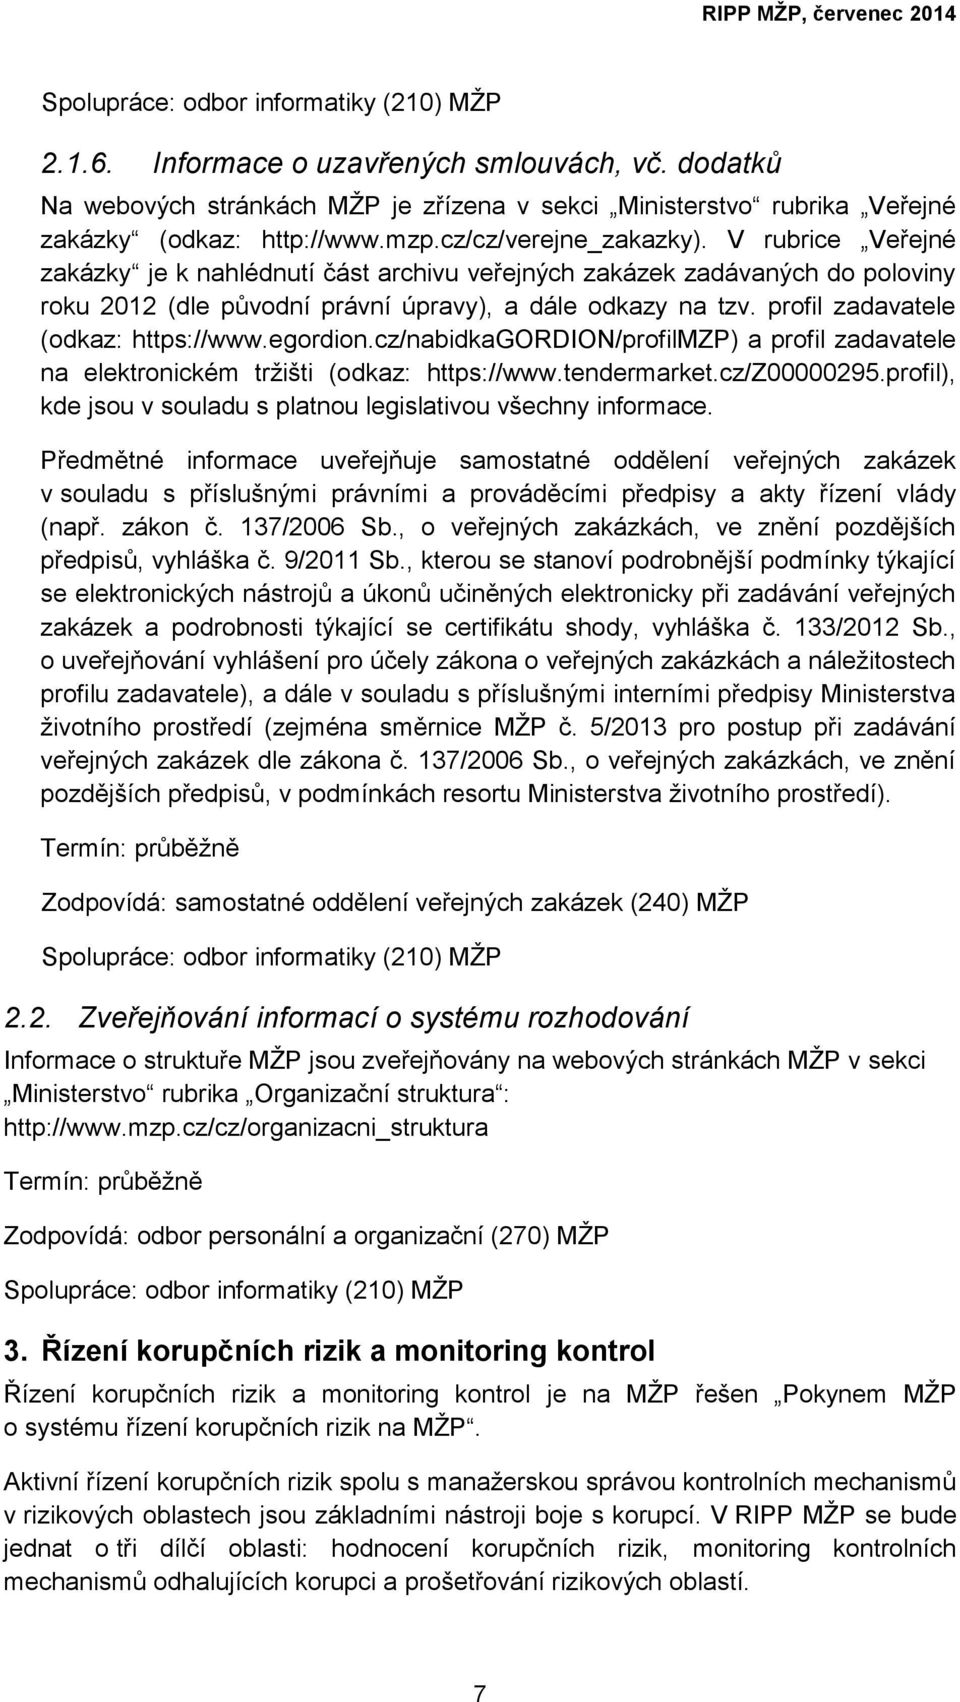 egordion.cz/nabidkagordion/profilmzp) a profil zadavatele na elektronickém tržišti (odkaz: https://www.tendermarket.cz/z00000295.profil), kde jsou v souladu s platnou legislativou všechny informace.